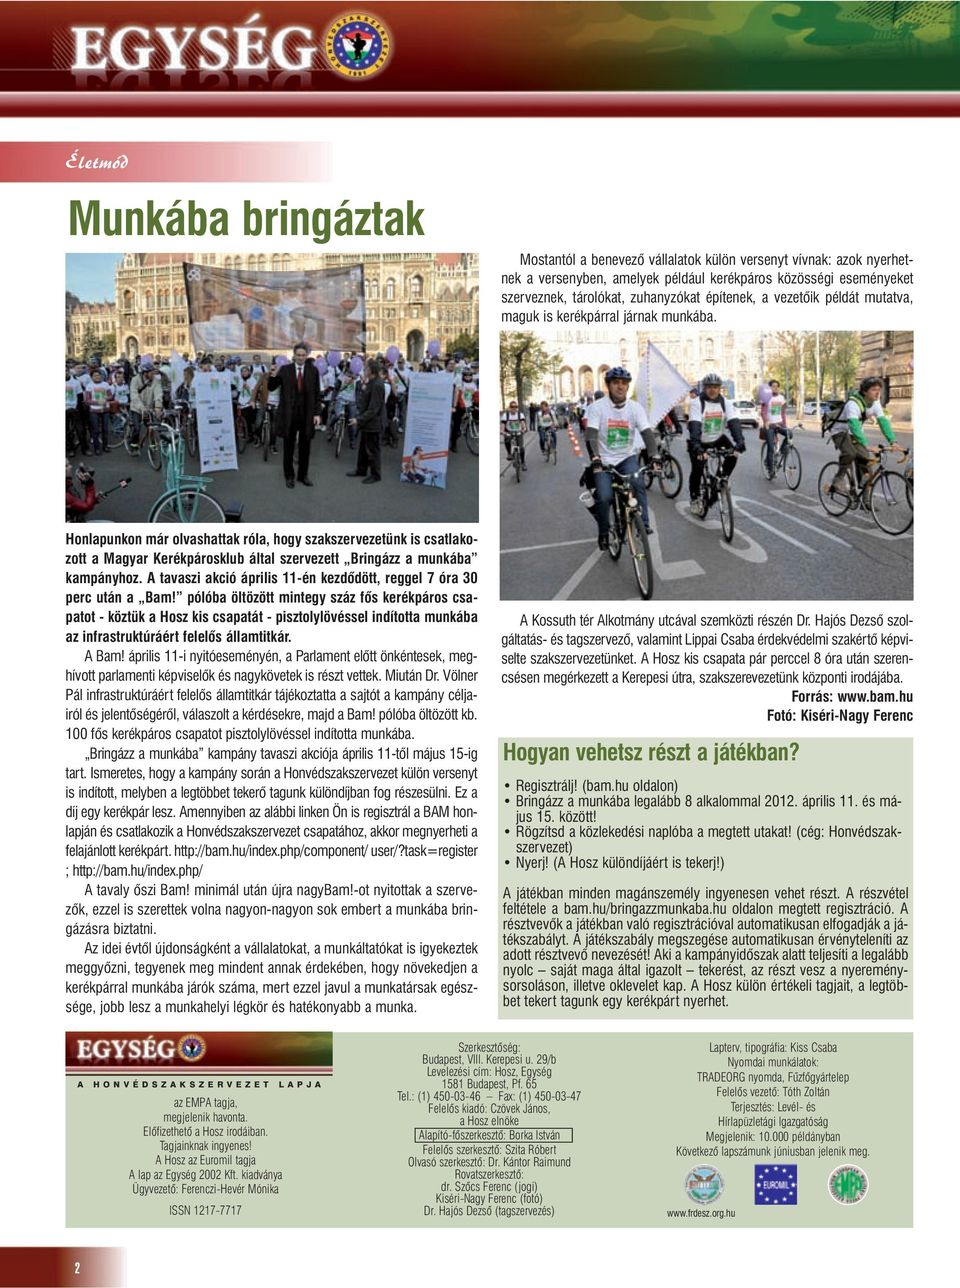 Honlapunkon már olvashattak róla, hogy szakszervezetünk is csatlakozott a Magyar Kerékpárosklub által szervezett Bringázz a munkába kampányhoz.